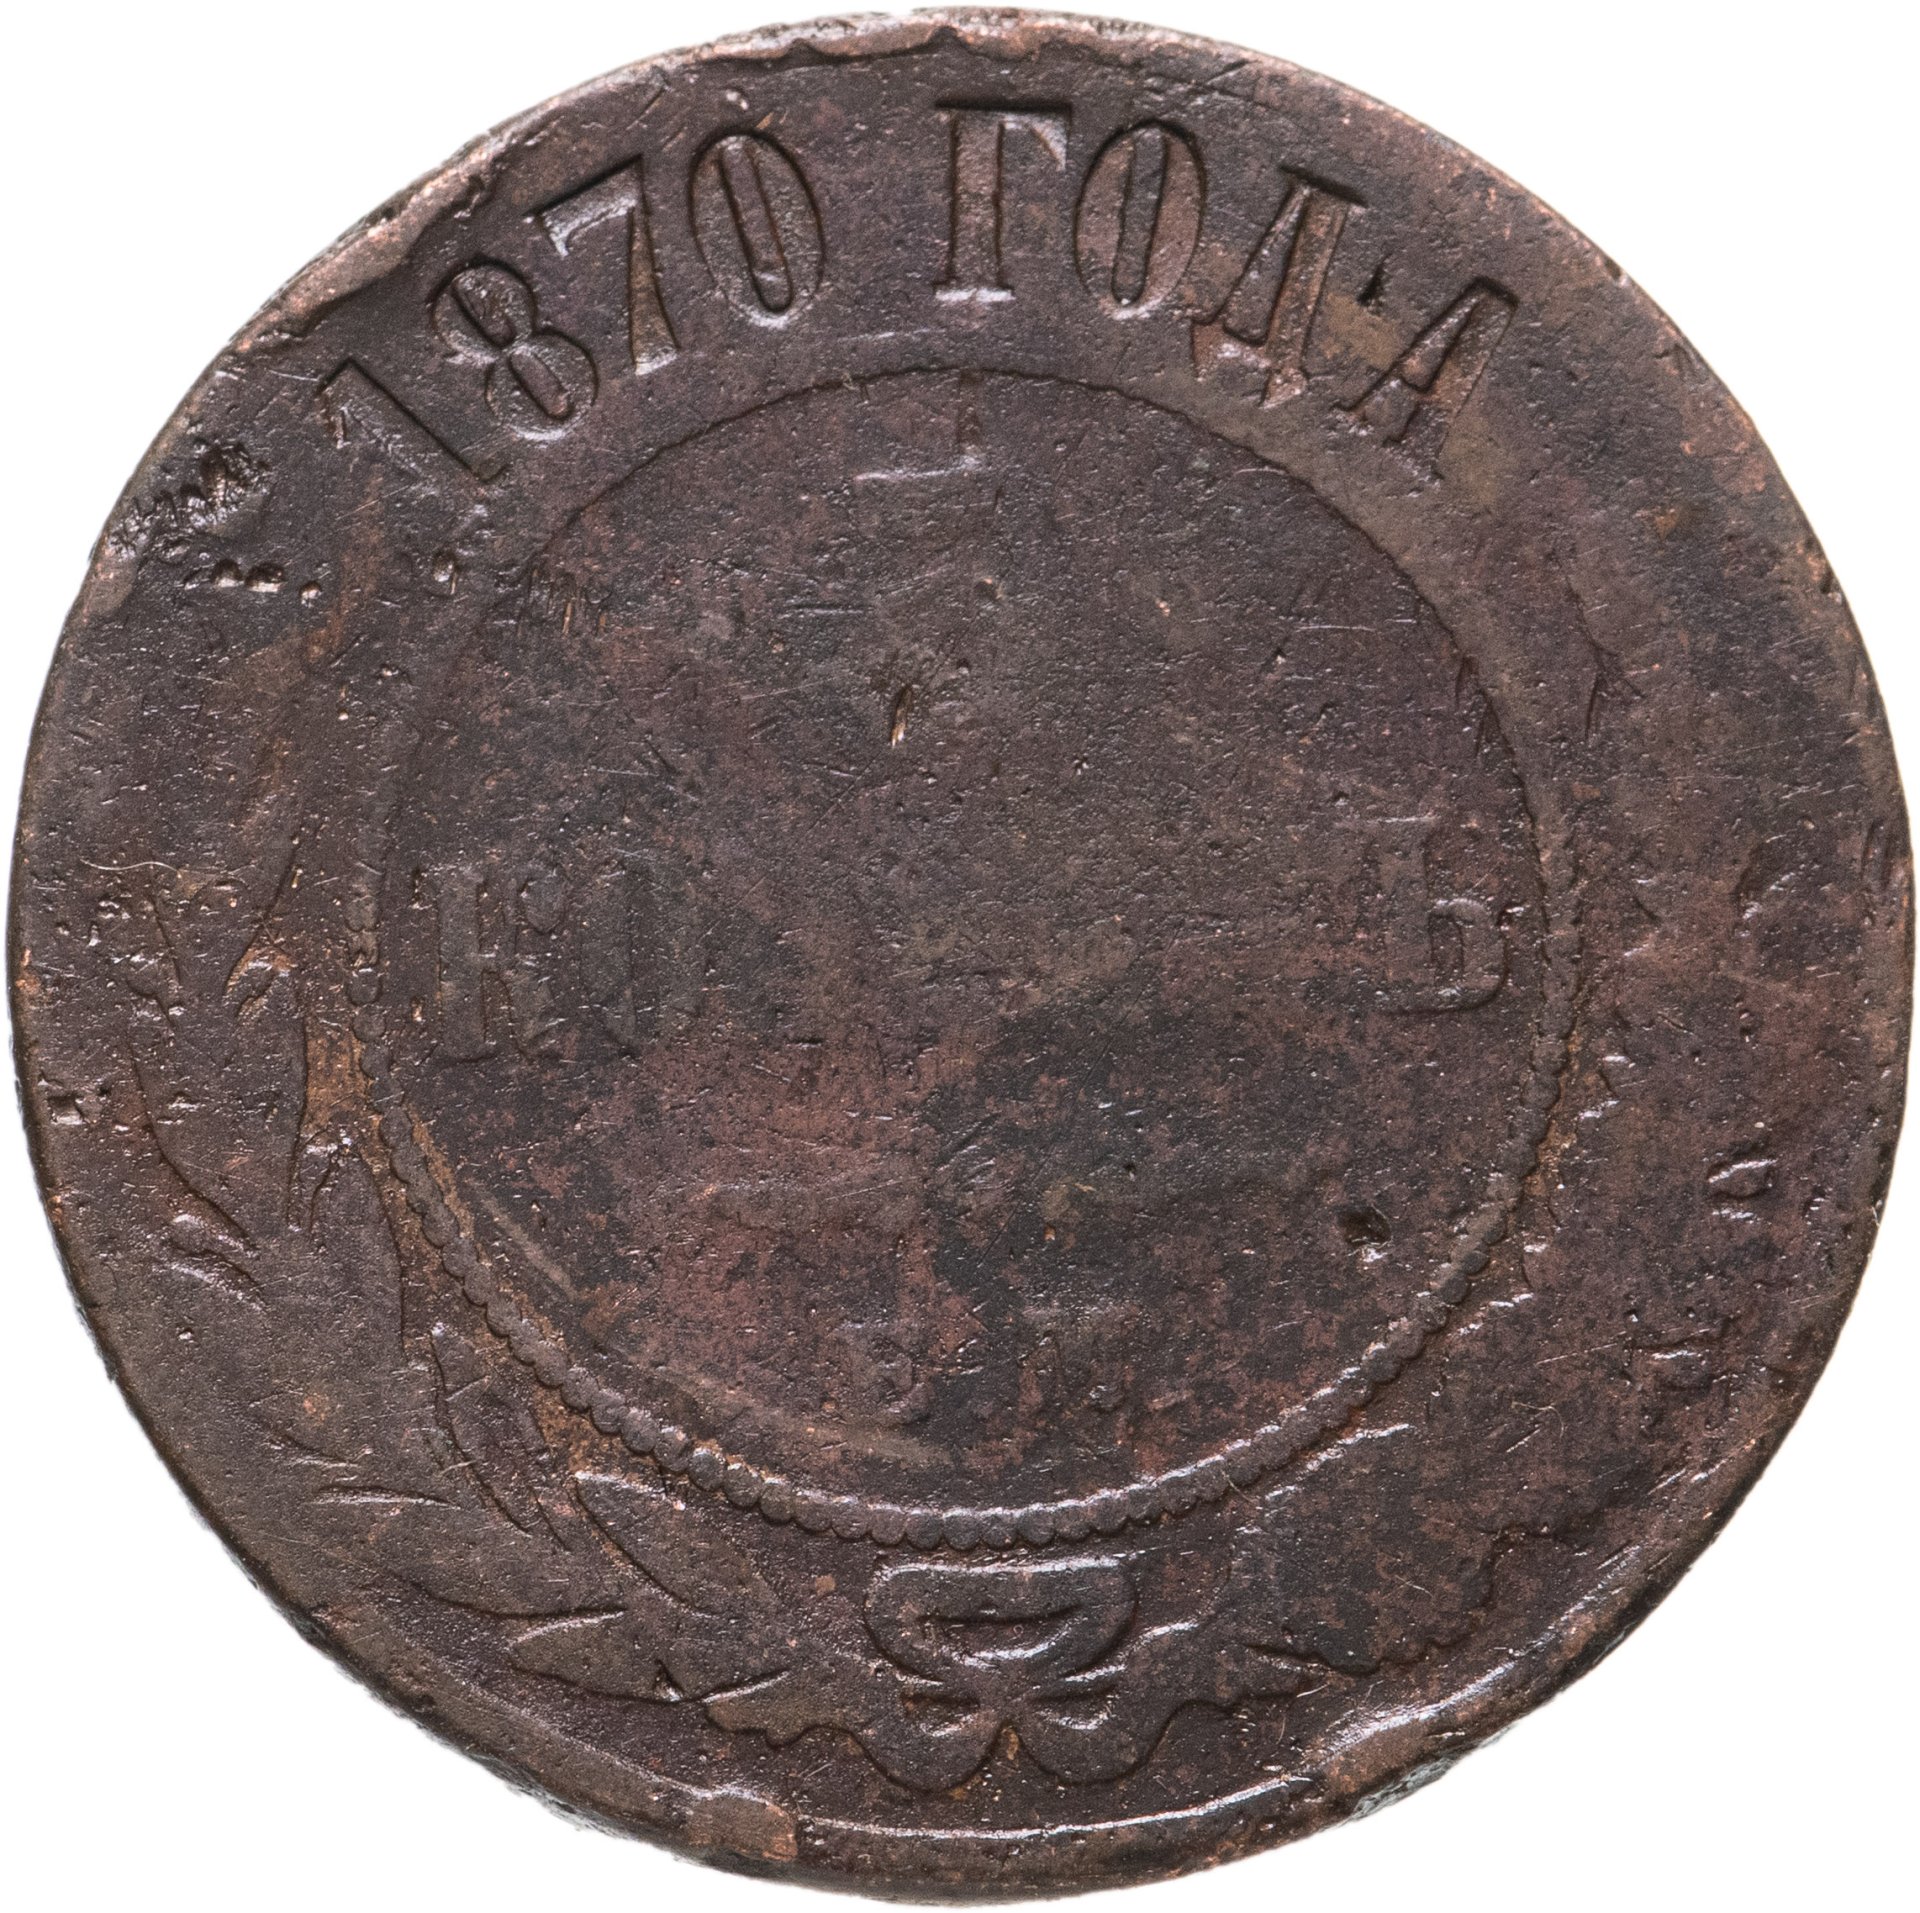 Аукцион царских. Старые монеты 1902. 1887 Britti монета. 10 Копеек 1887 года цена.